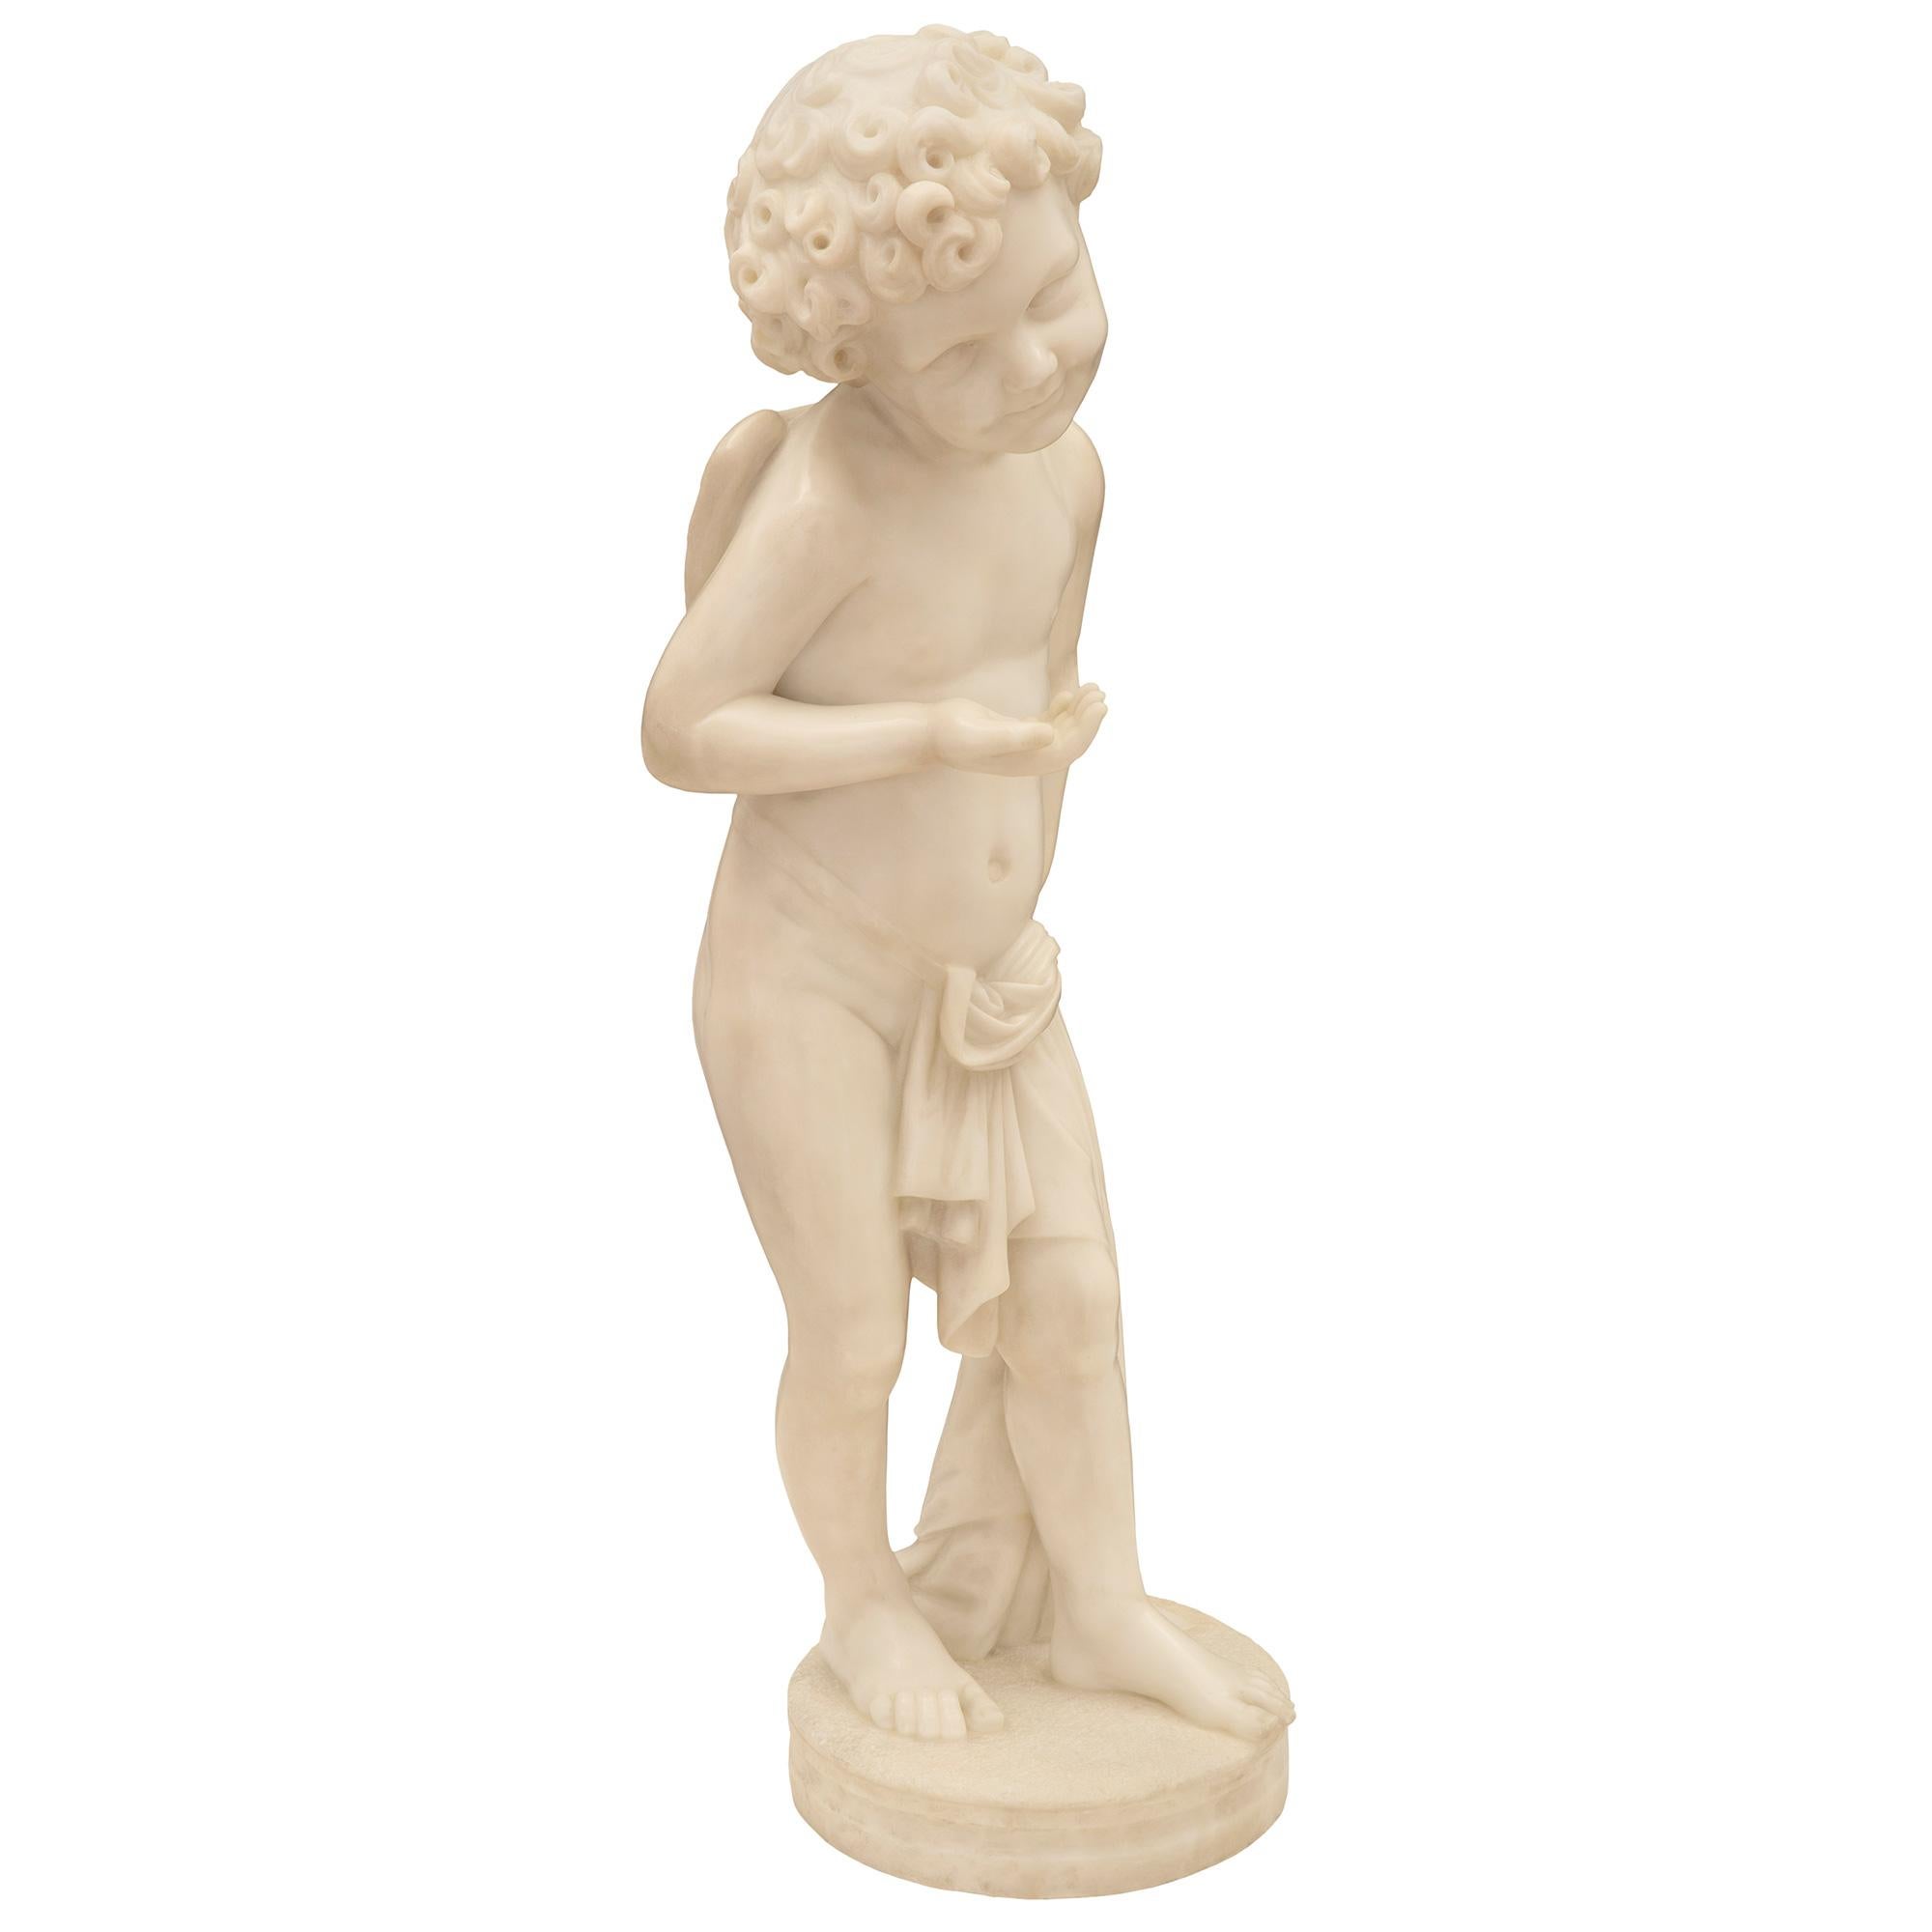 Une charmante statue de jeune cupidon en marbre blanc de Carrare datant du 19e siècle. La statue est surmontée d'une base circulaire ornée d'un fin motif marbré enveloppant. Le cupidon, merveilleusement exécuté, est drapé dans un beau vêtement